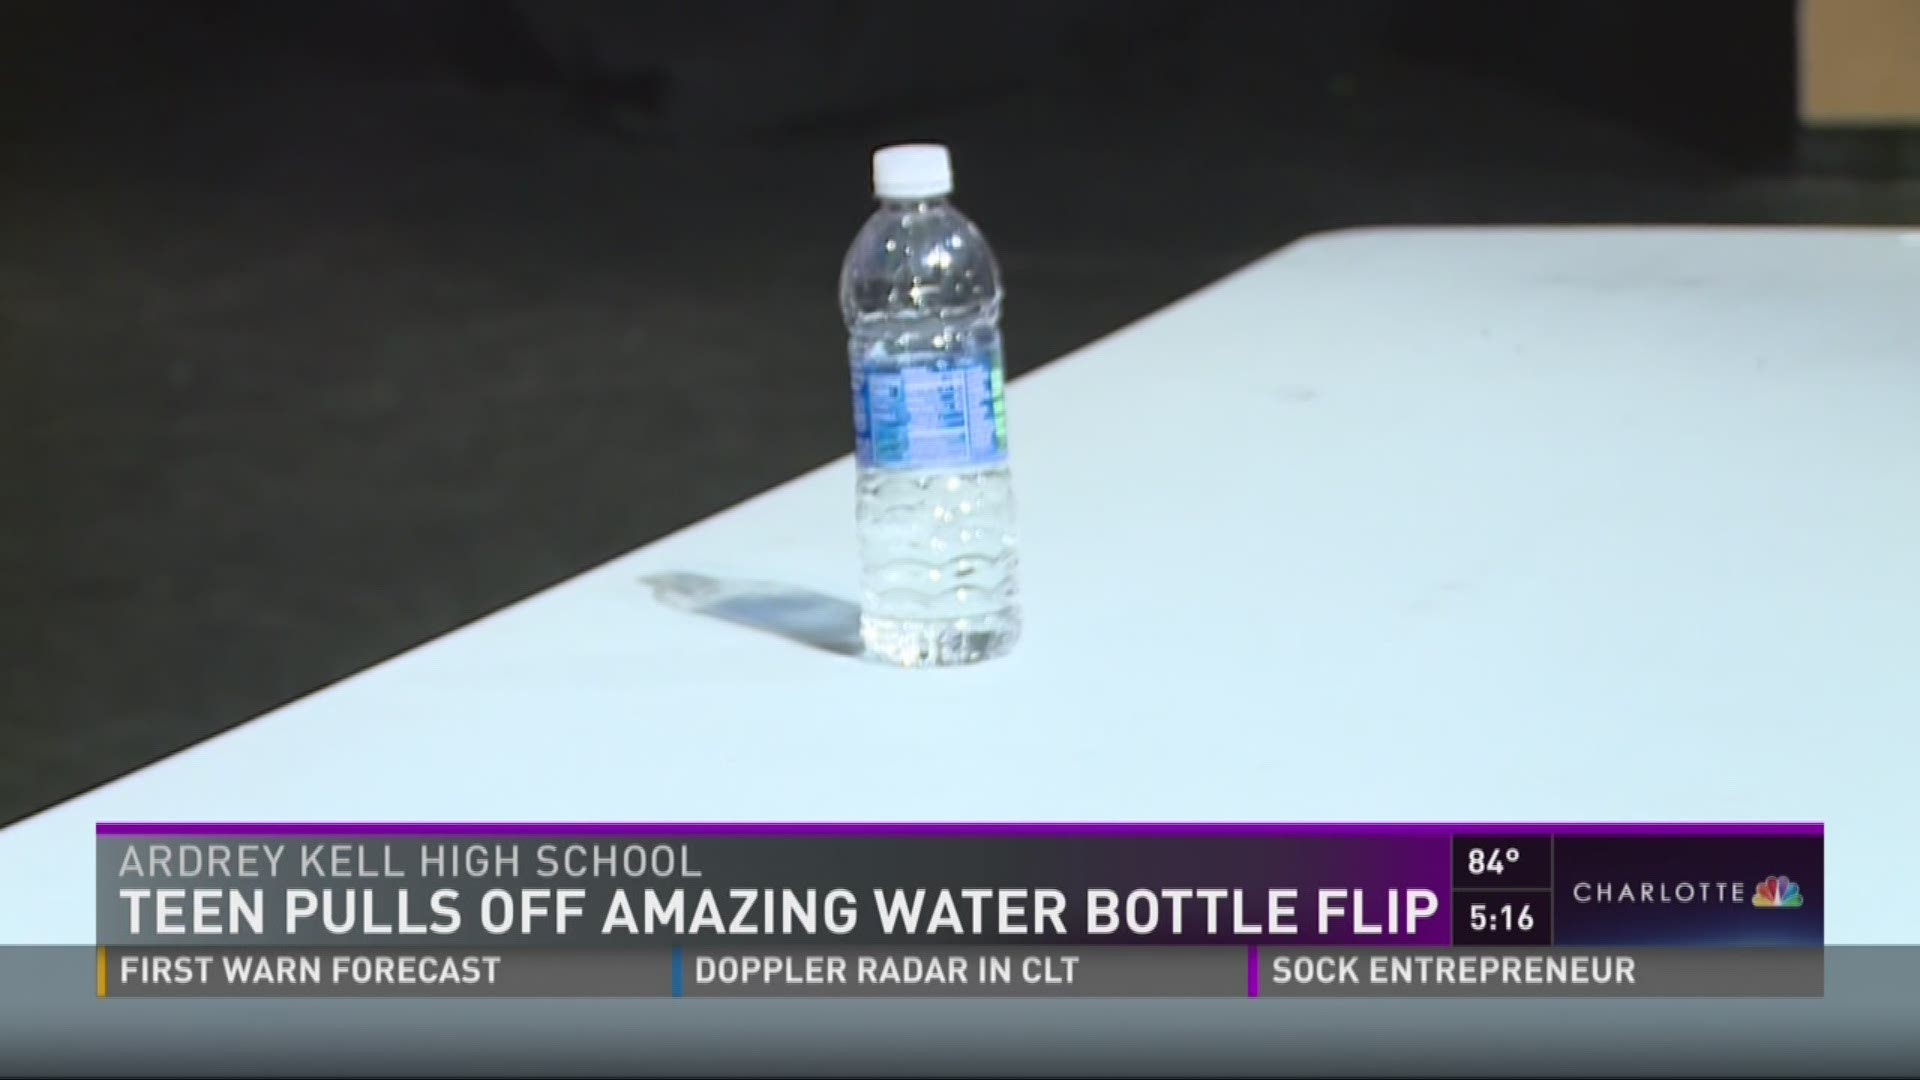 Teen pulls off amazing water bottle flip